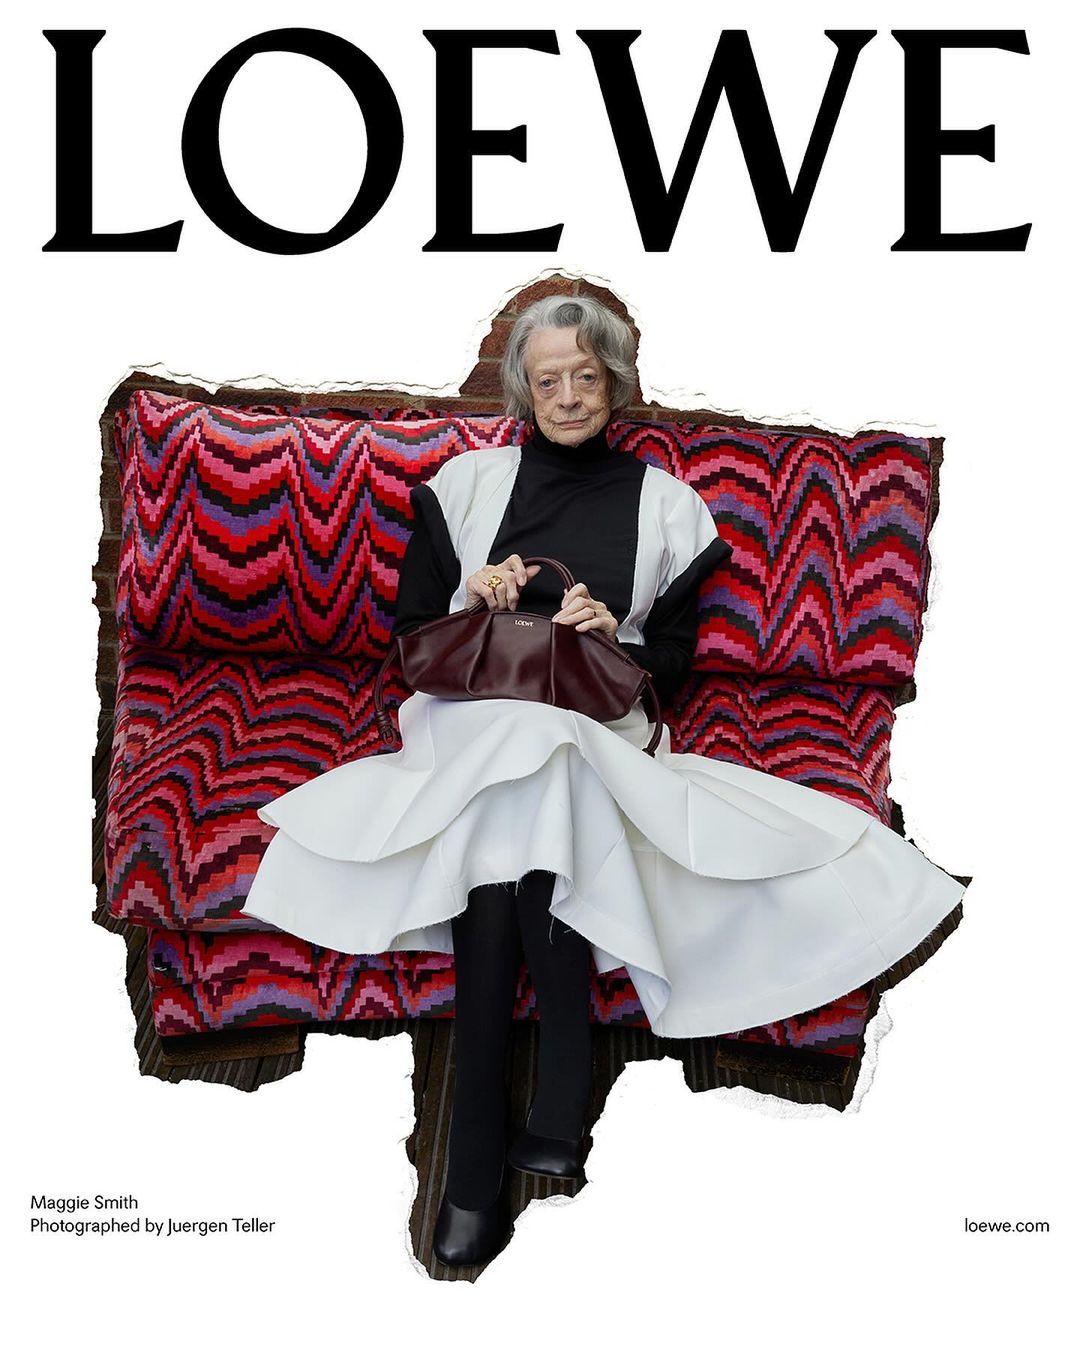 88-річна Меггі Сміт та інші зірки у новій рекламній кампанії Loewe-Фото 1